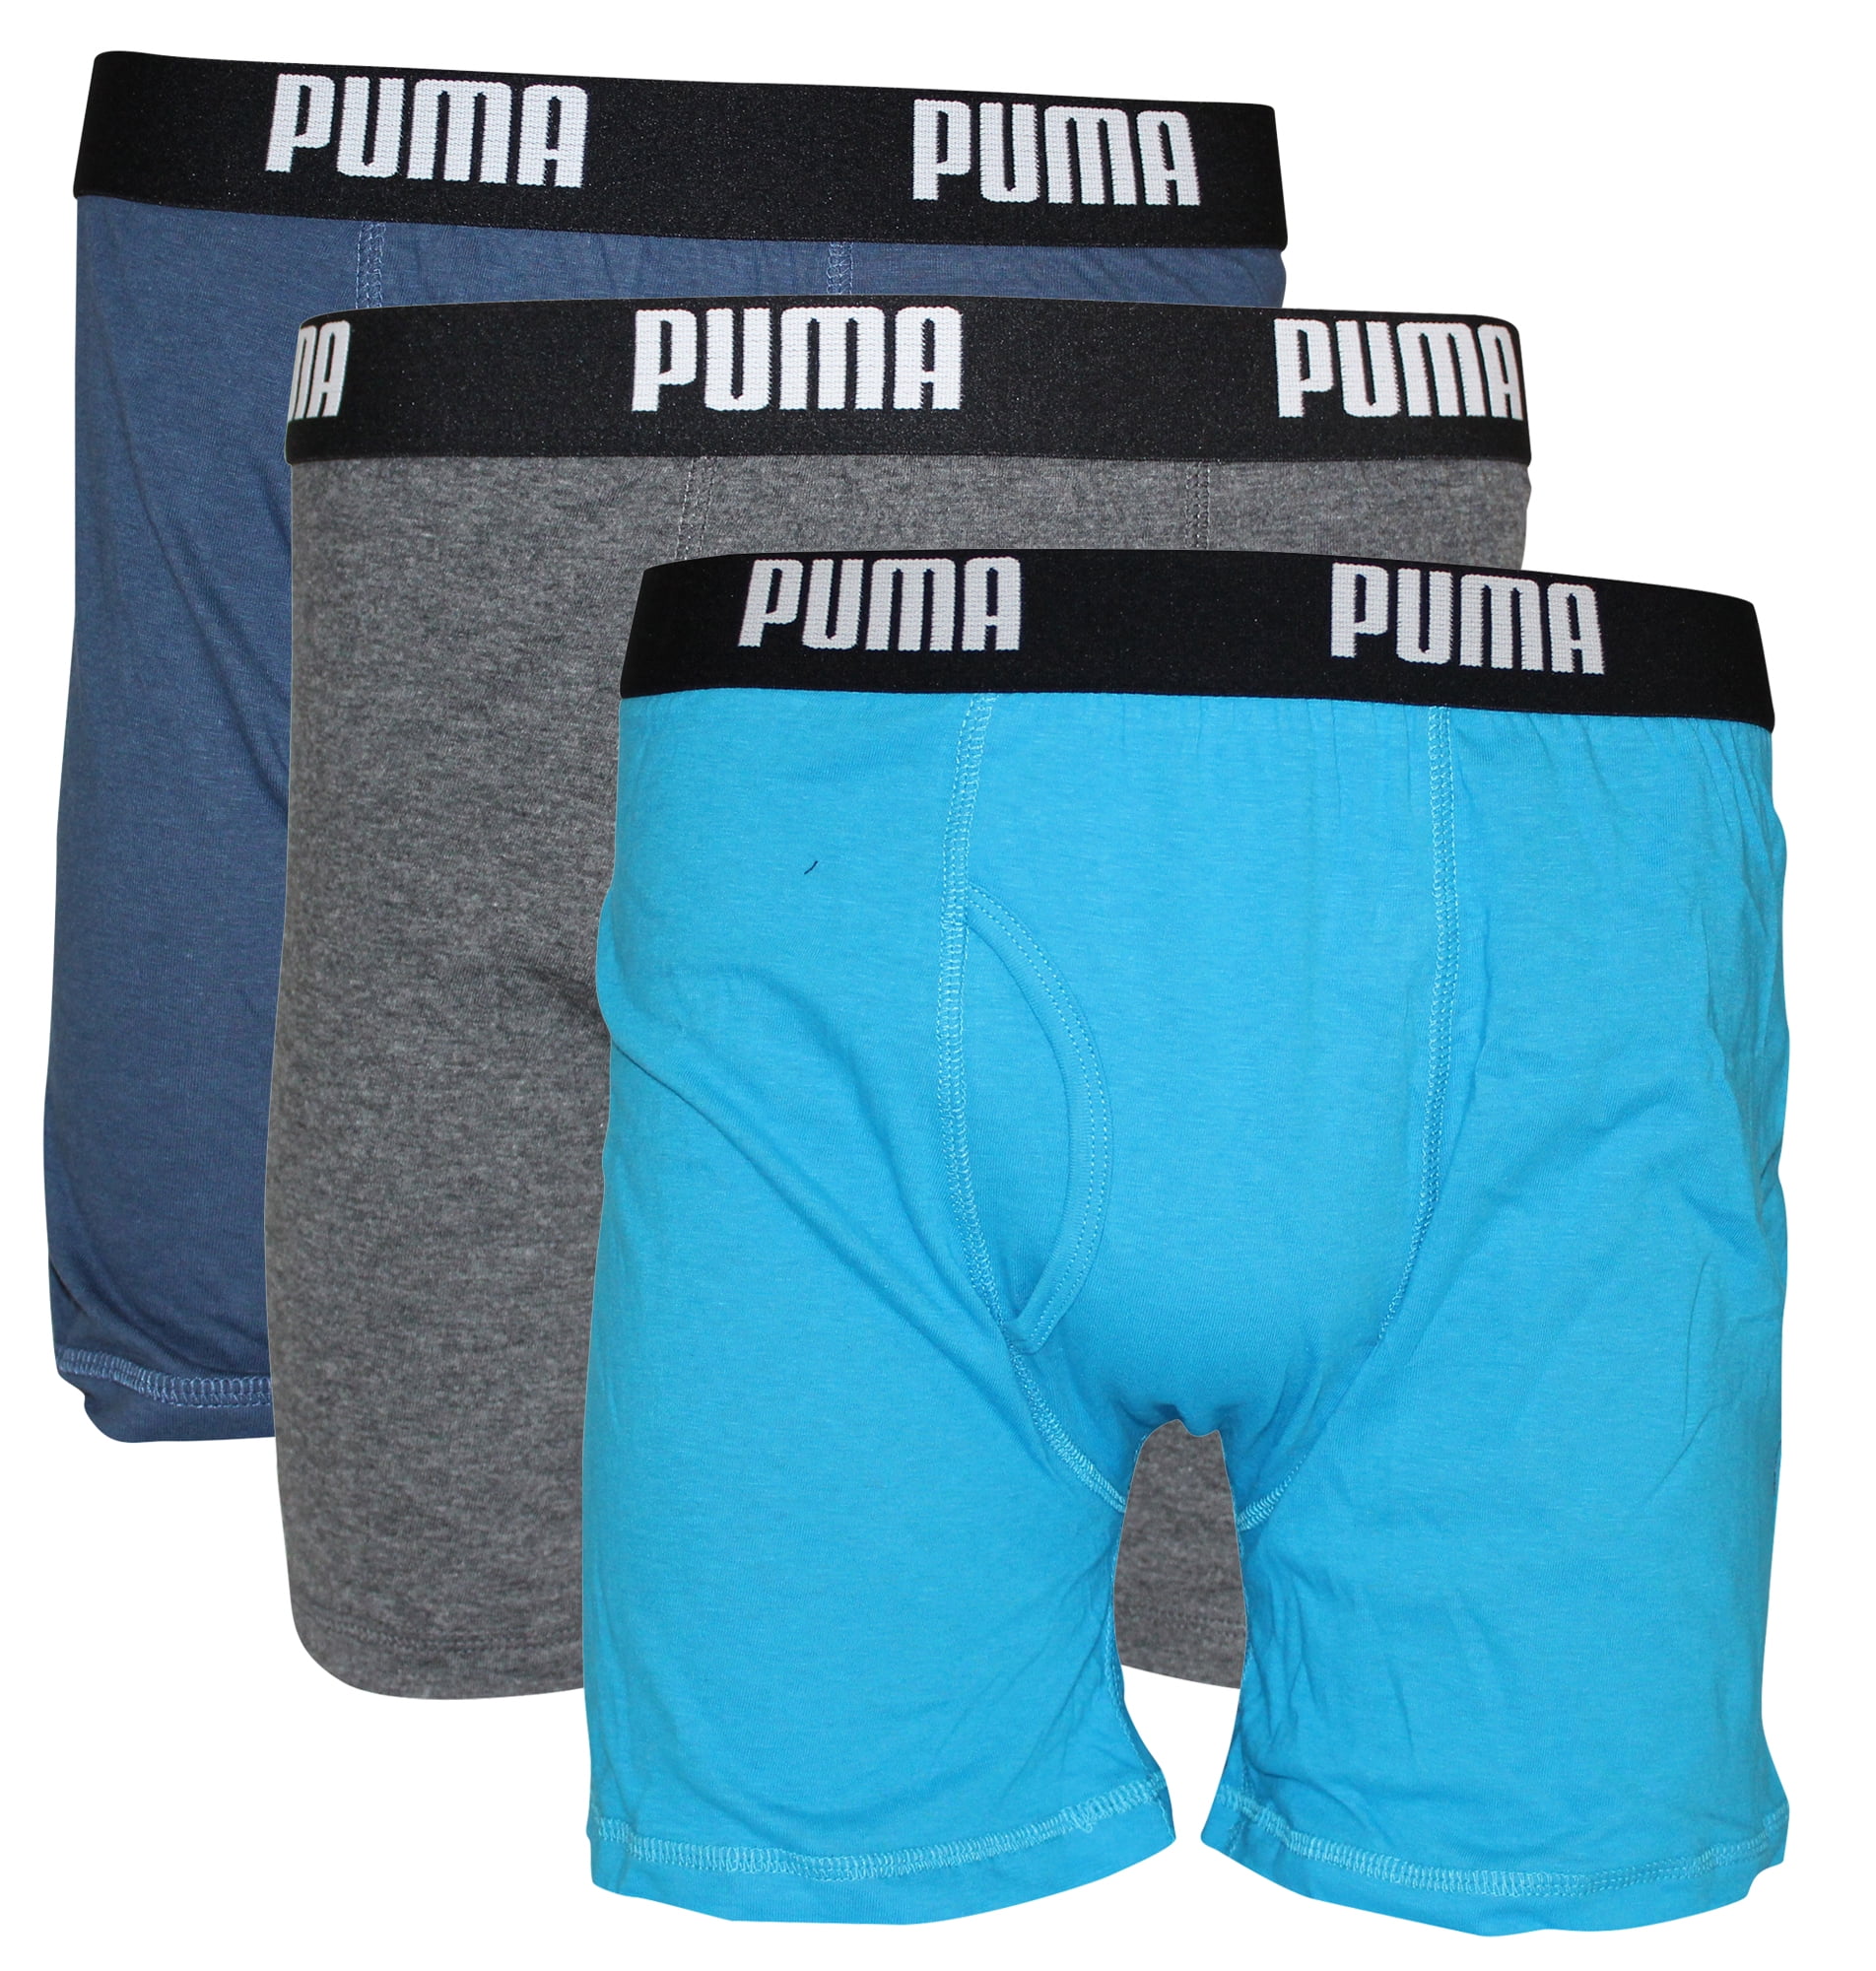 PUMA - PUMA Men's 3 Pack Cotton Boxer Briefs - Walmart.com - Walmart.com